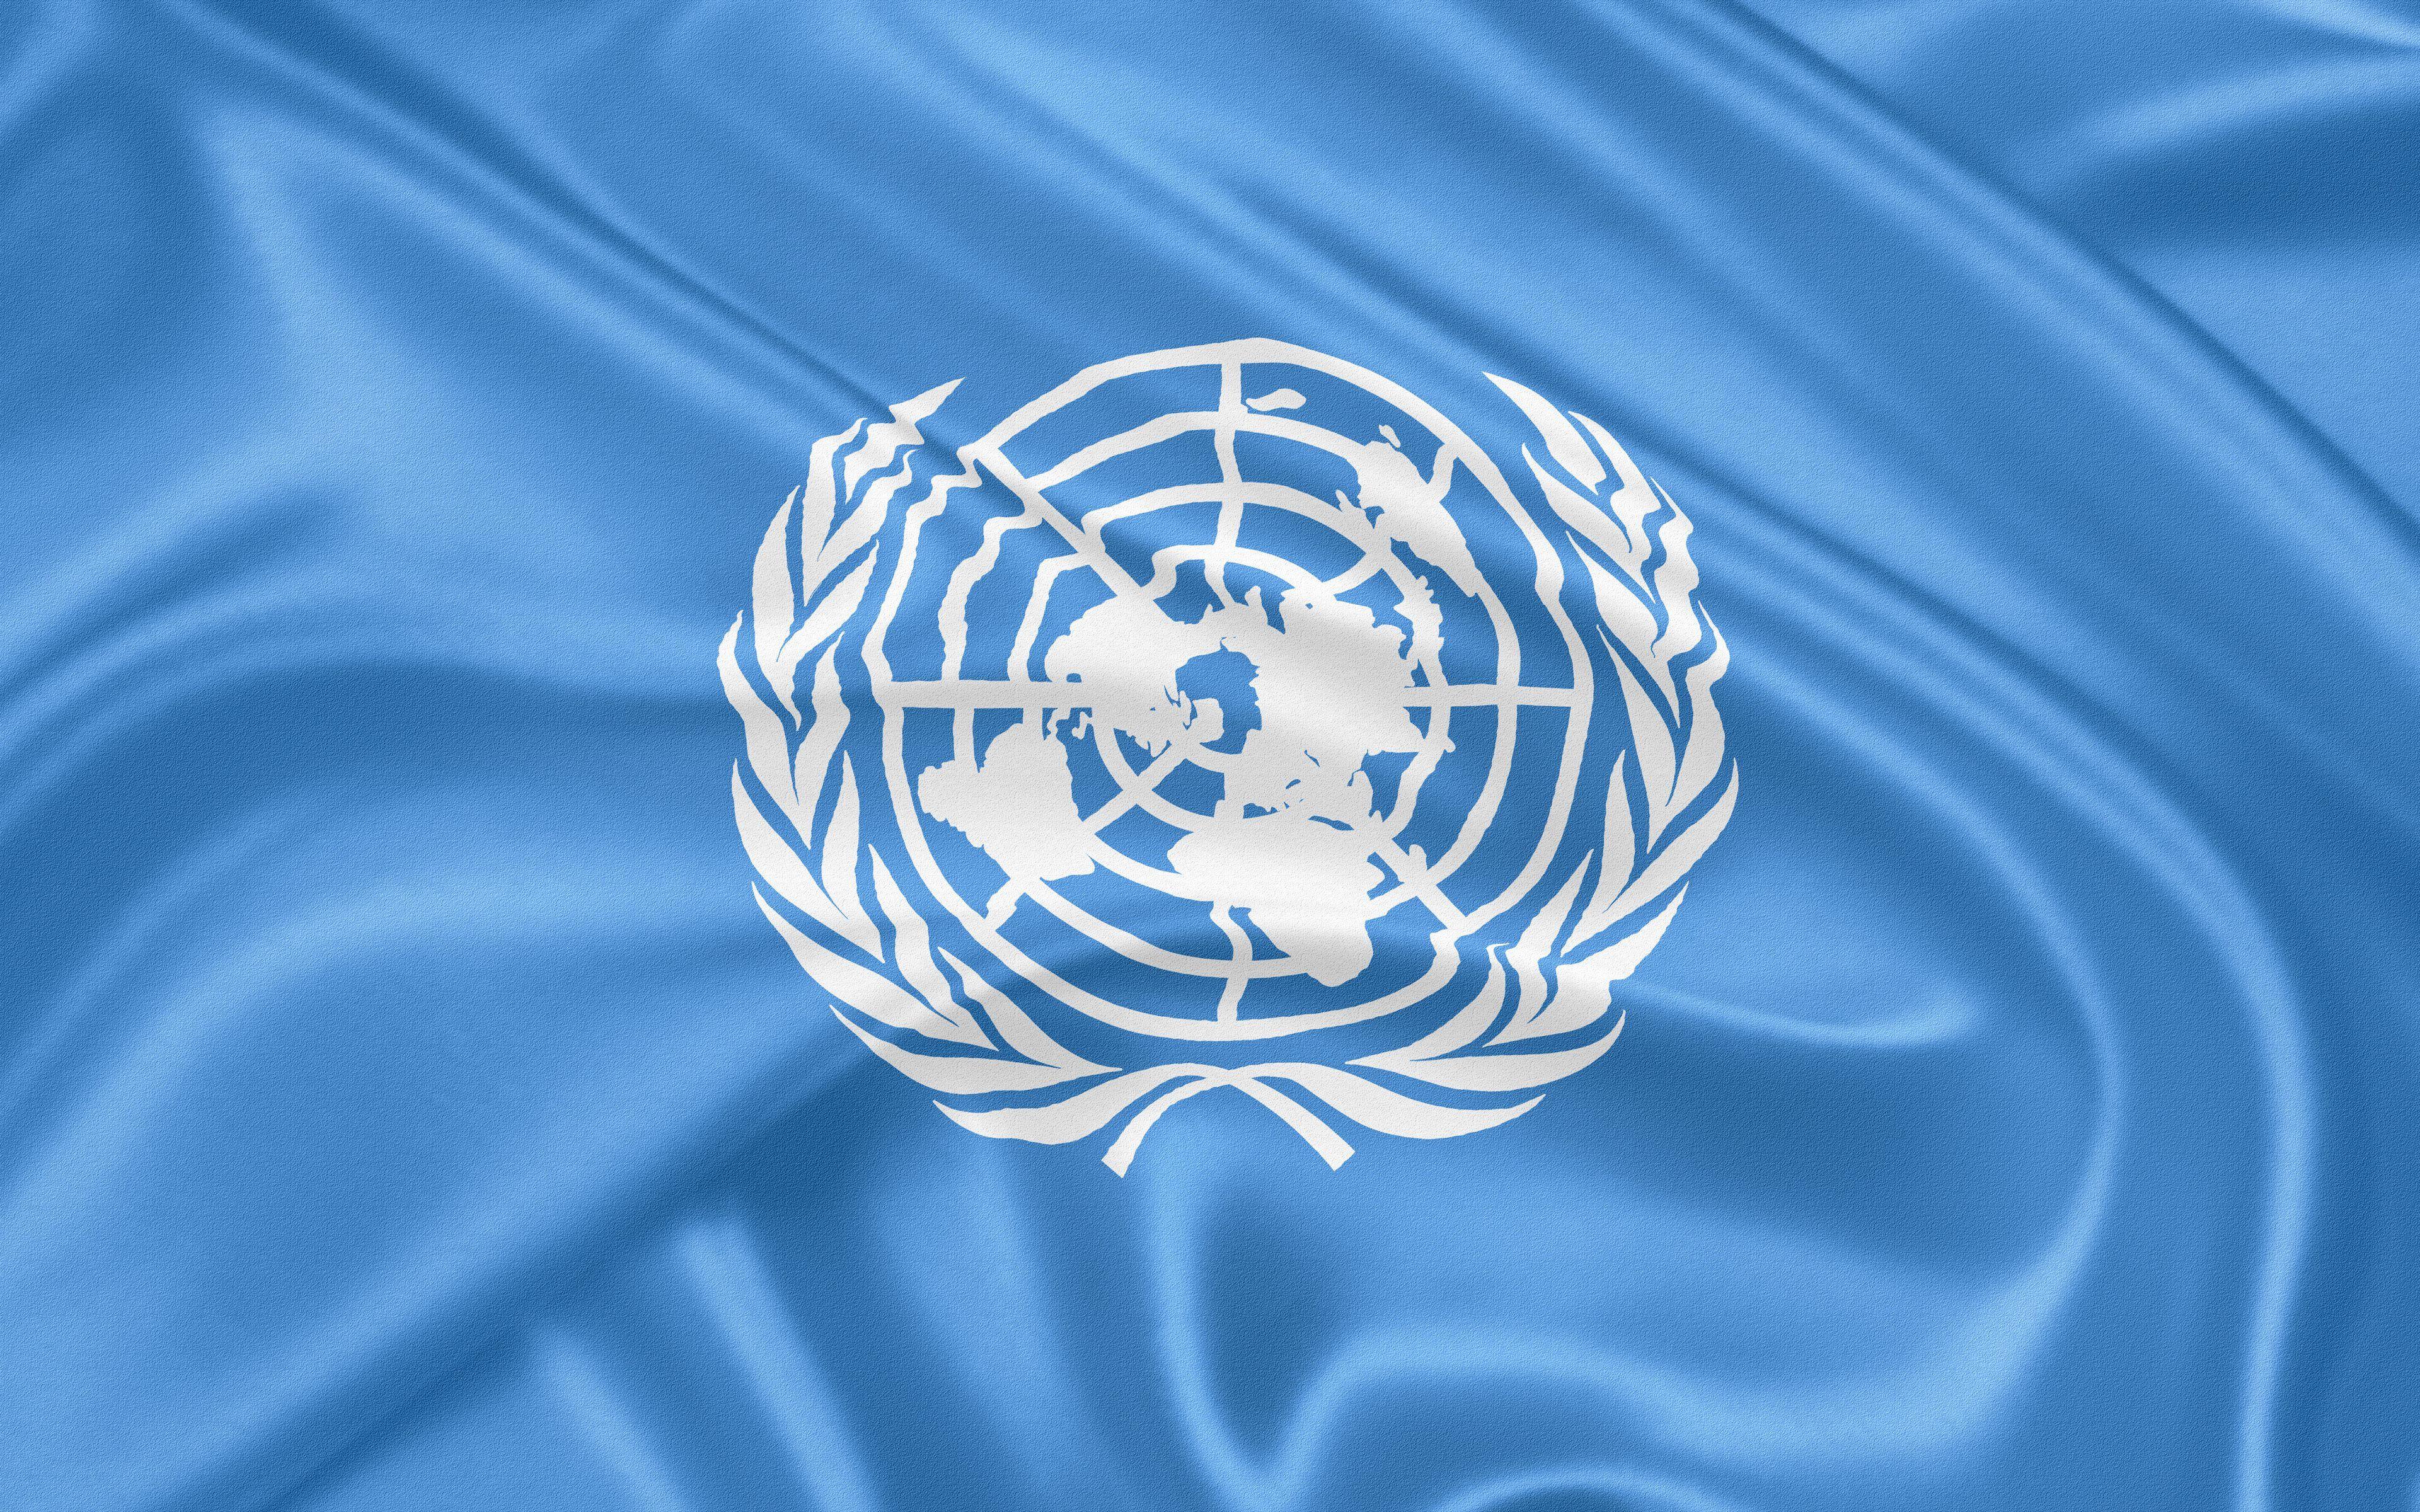 Е оон. Флаг ООН. Флаг ООН 1945. Всемирный день потребителя. Эмблема ООН фото.